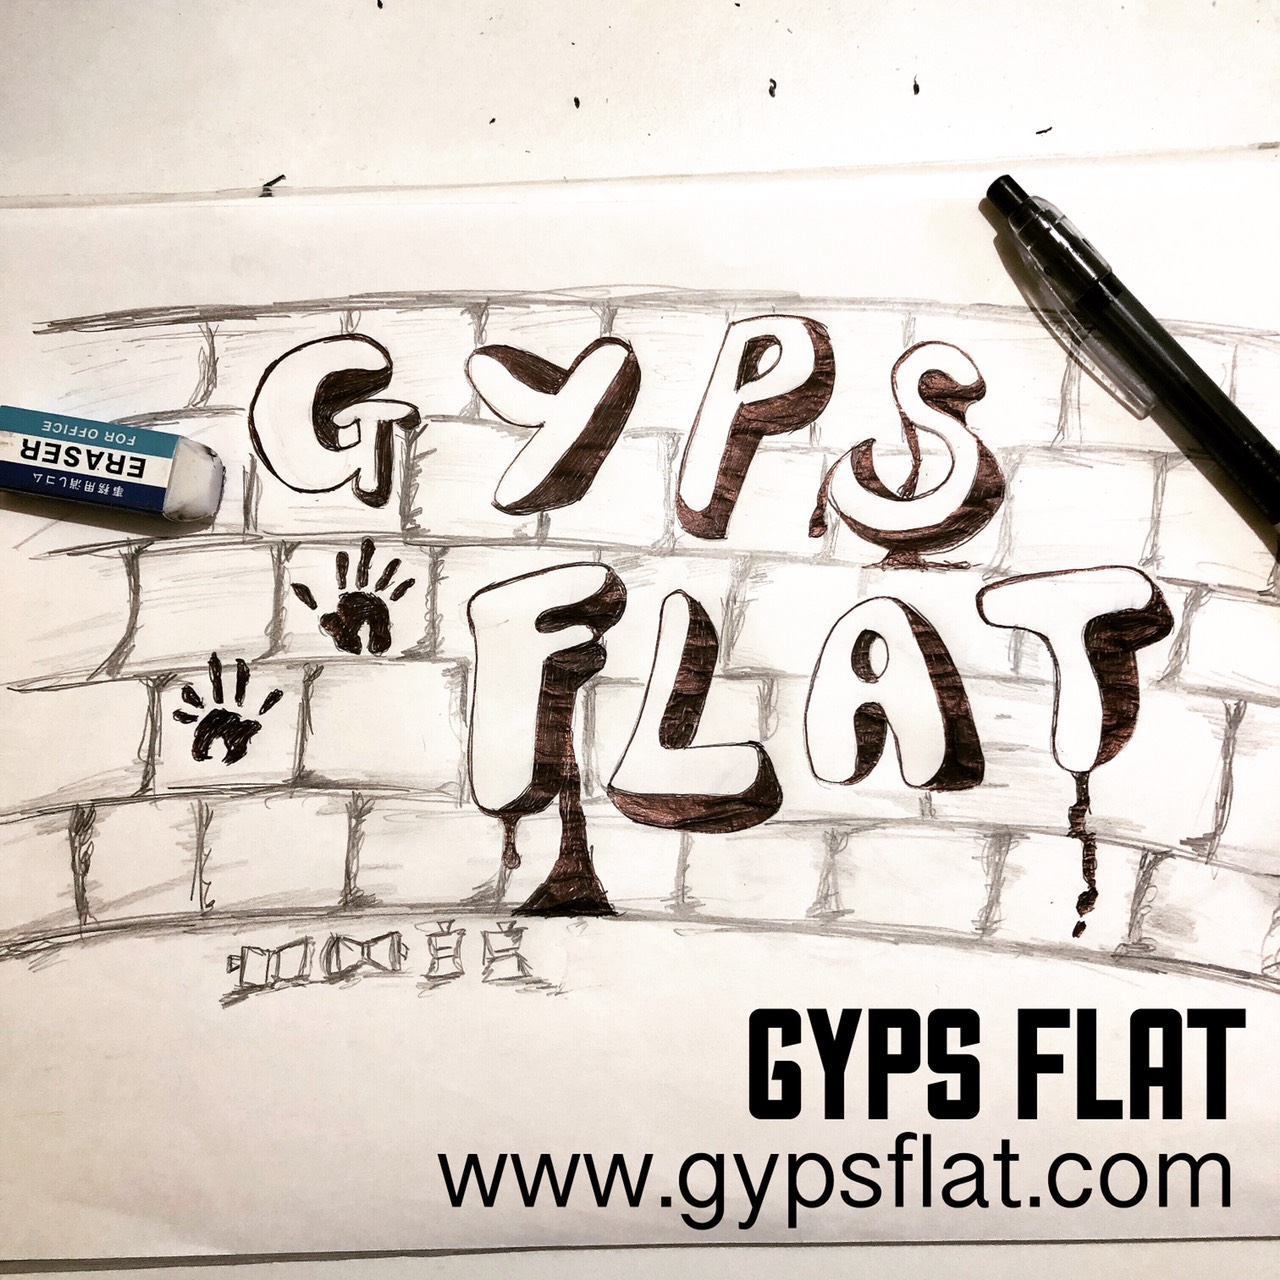 GYPS FLATネットショップ開設から早一か月が経ちました。